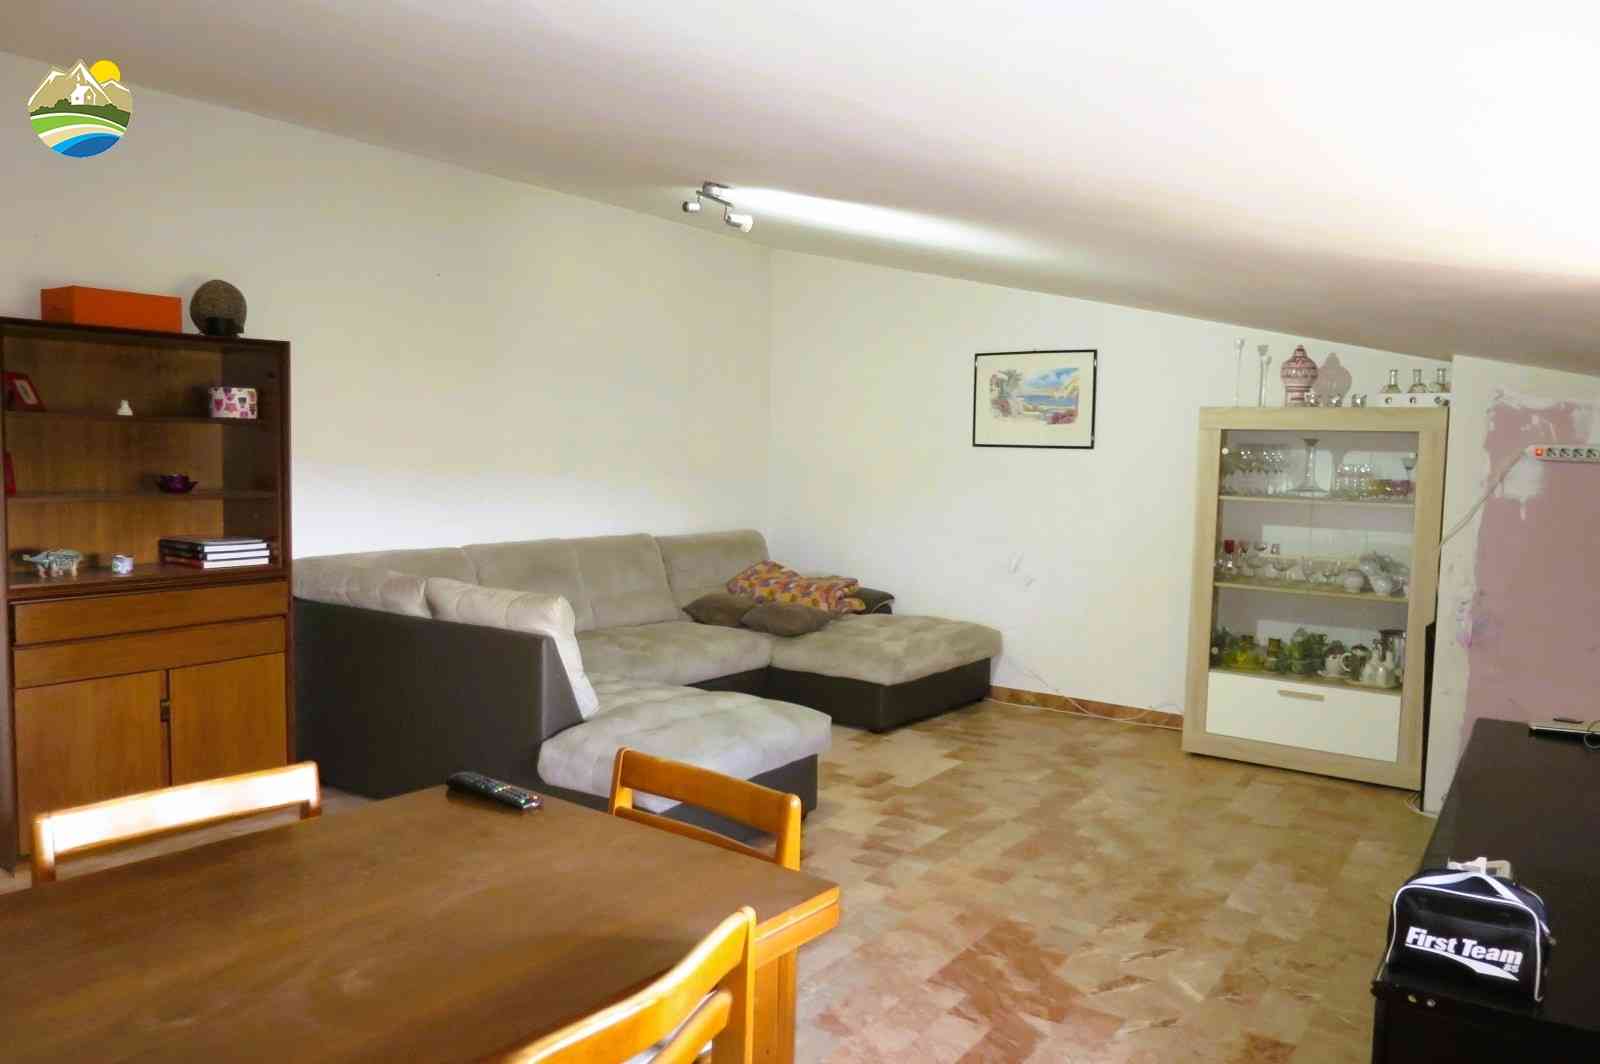 Casa in paese Casa in paese in vendita Pineto (TE), Appartamento del Corso - Pineto - EUR 116.810 600